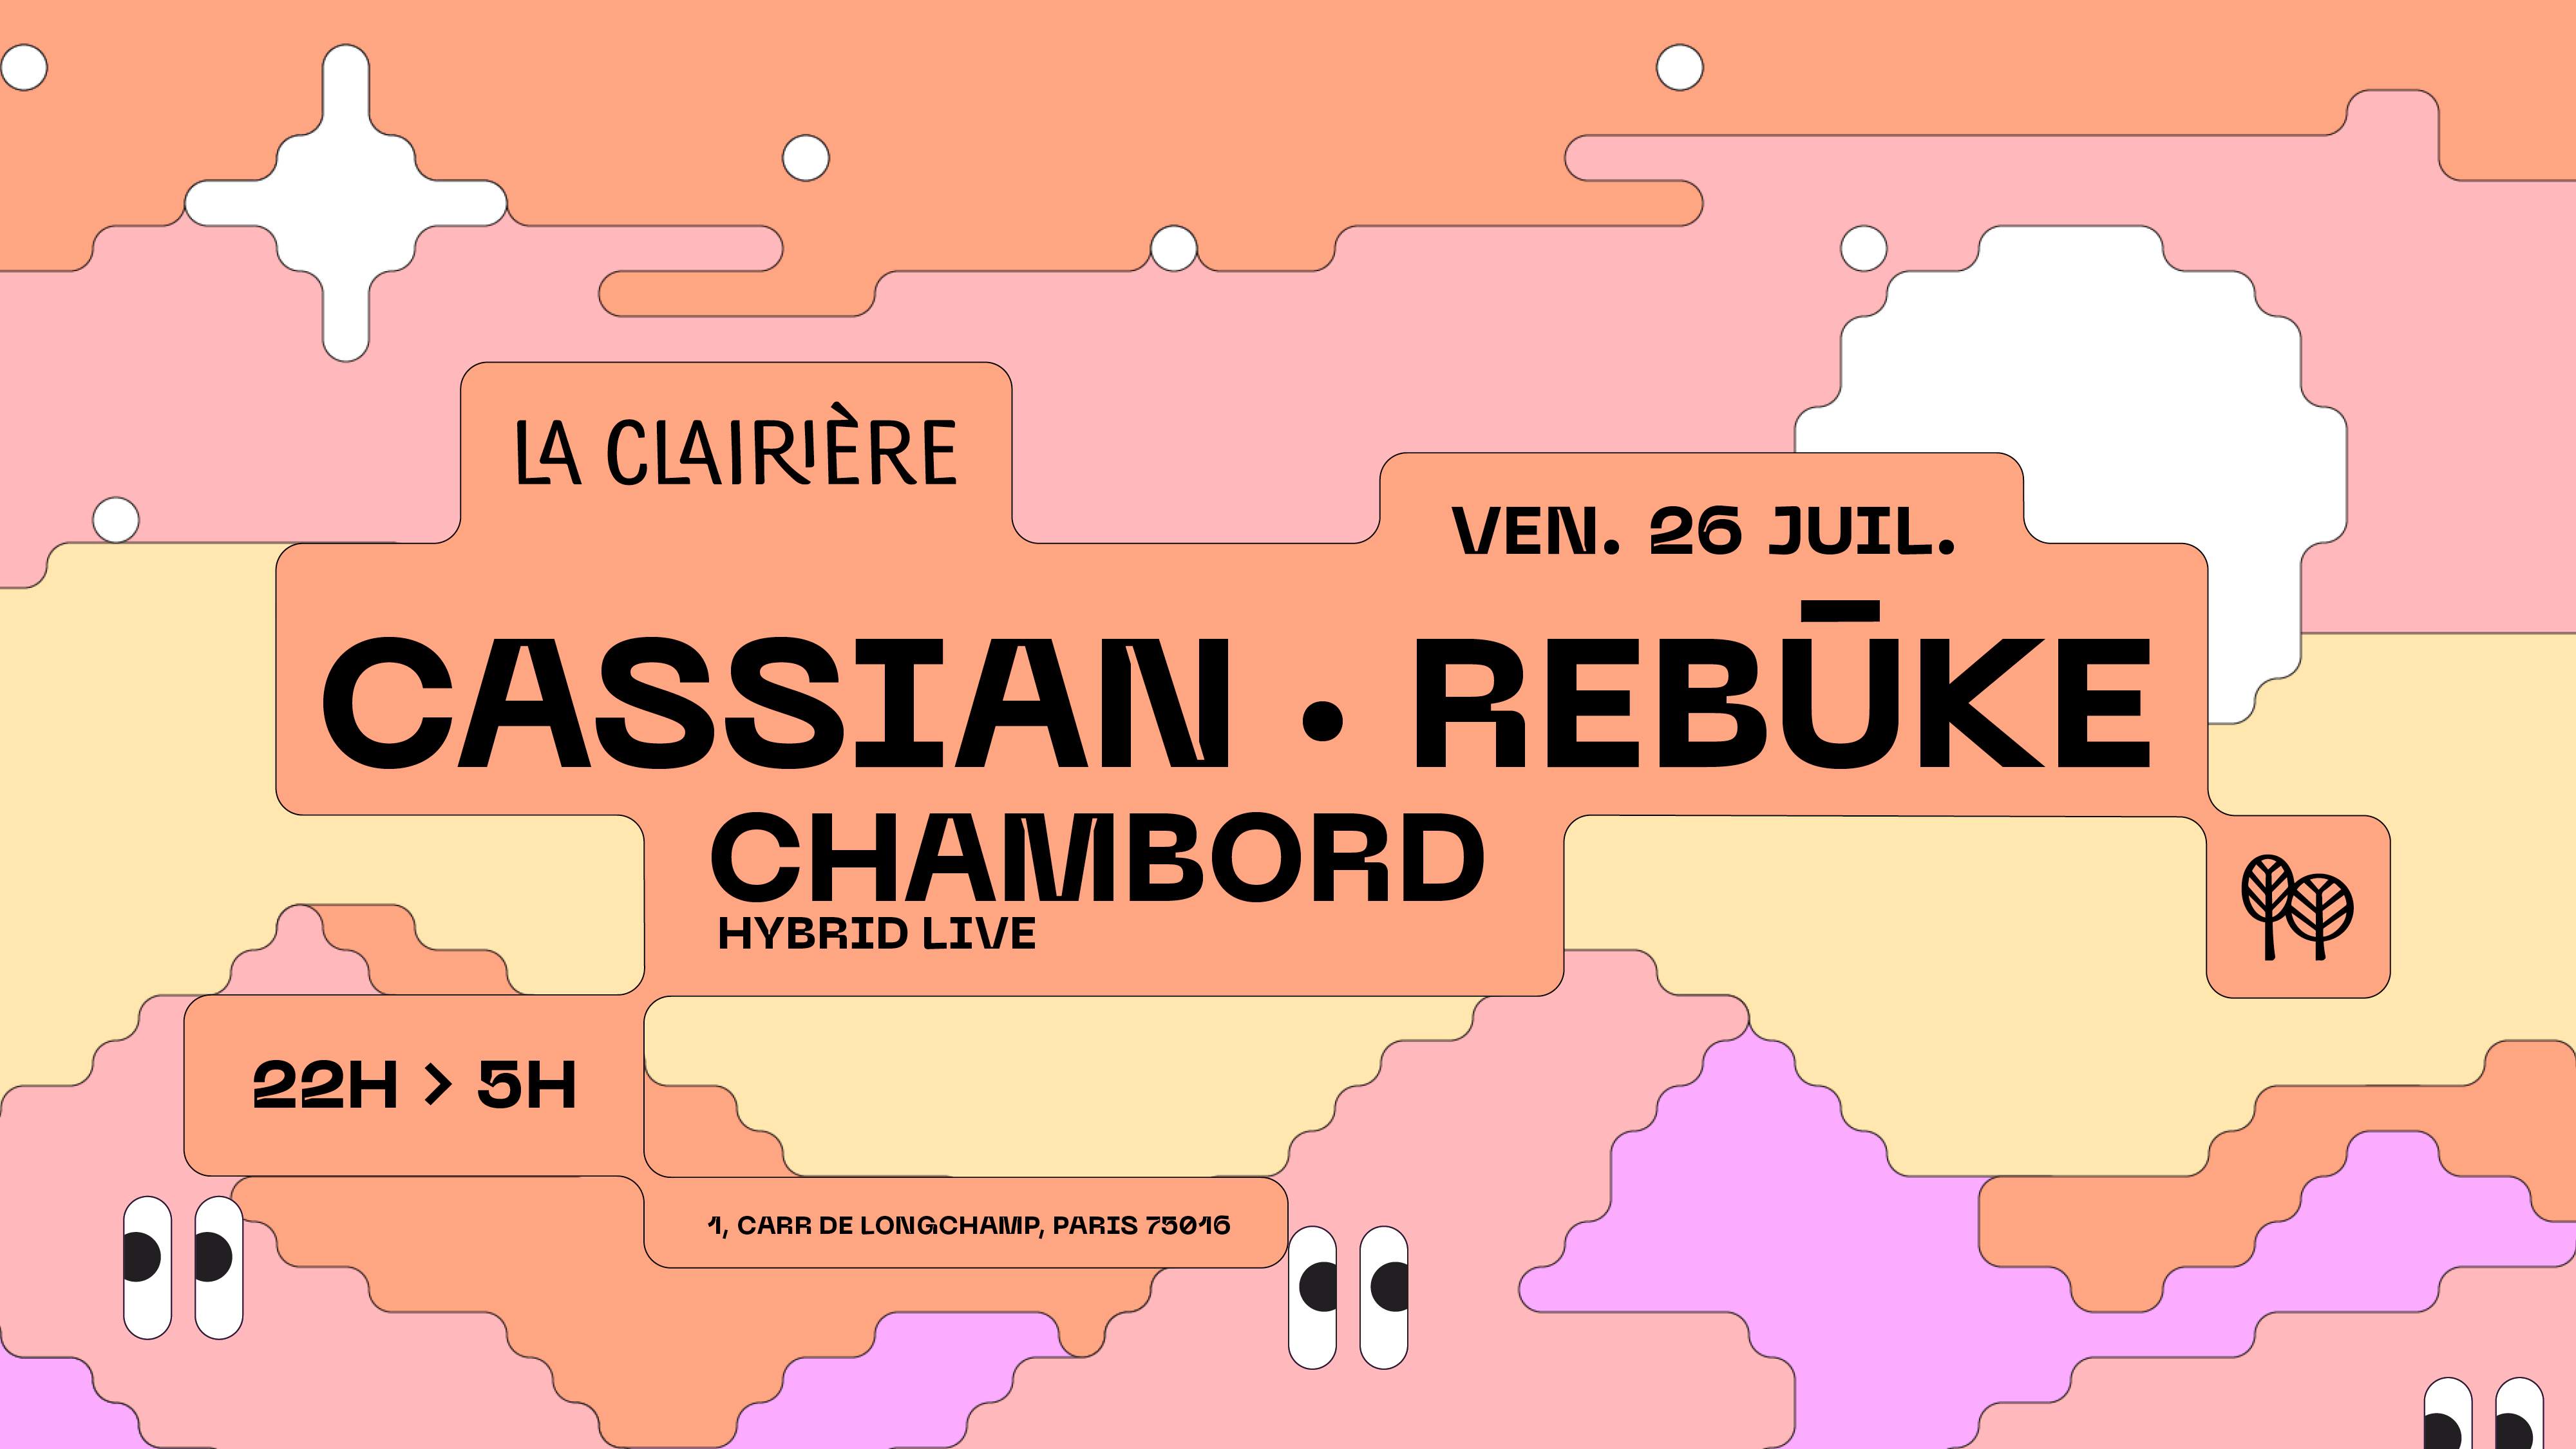 La Clairière: Cassian, Rebuke, Chambord (Hybrid live) - フライヤー表